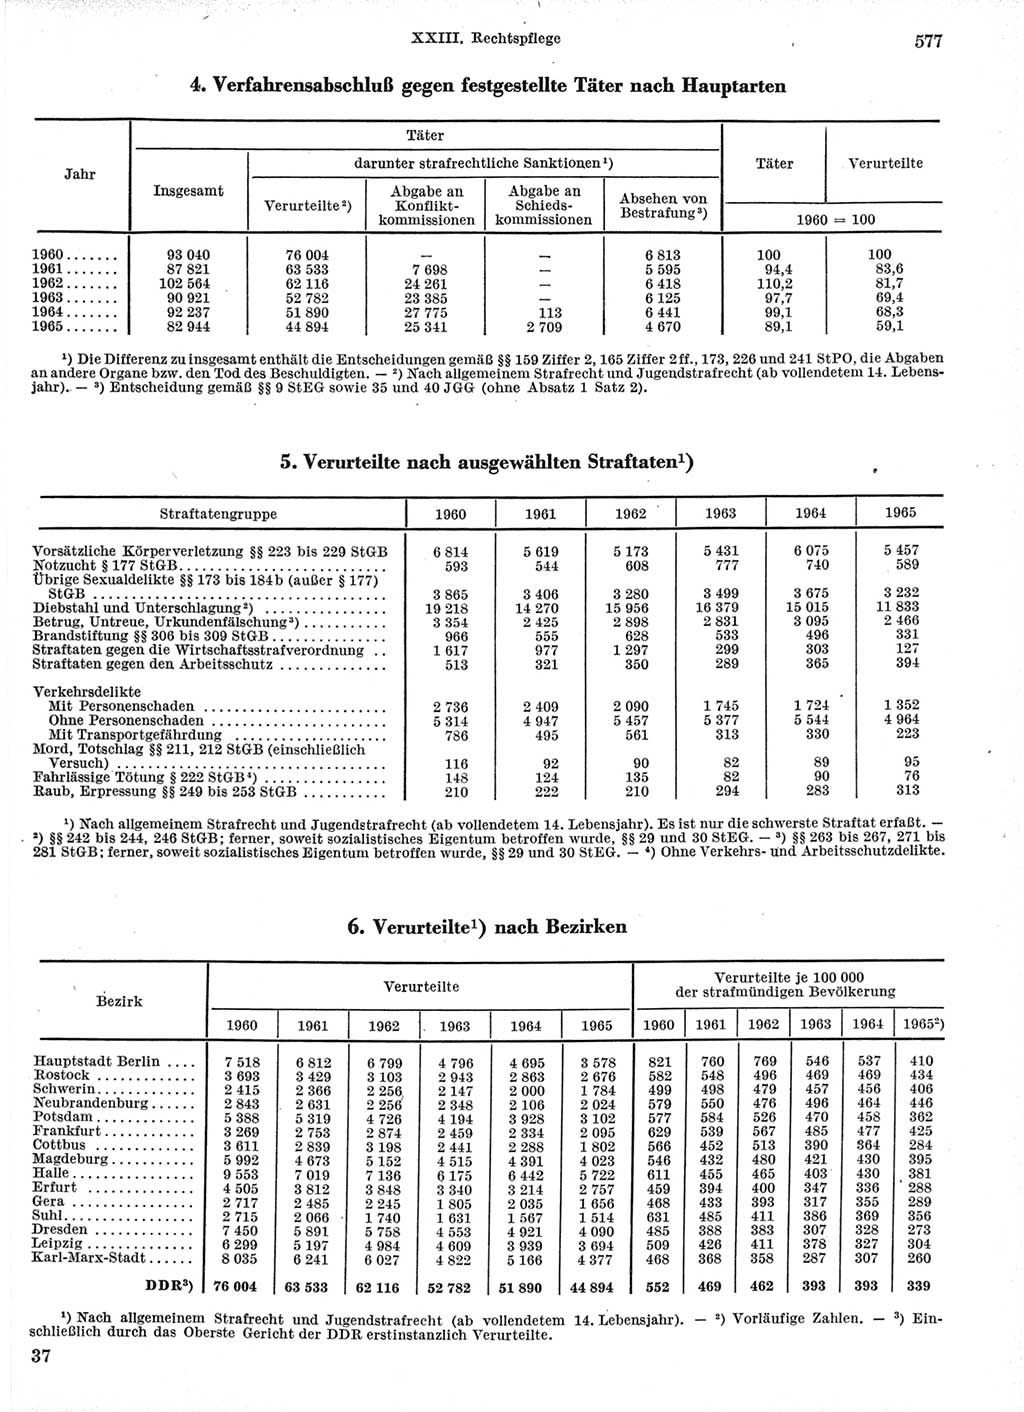 Statistisches Jahrbuch der Deutschen Demokratischen Republik (DDR) 1966, Seite 577 (Stat. Jb. DDR 1966, S. 577)